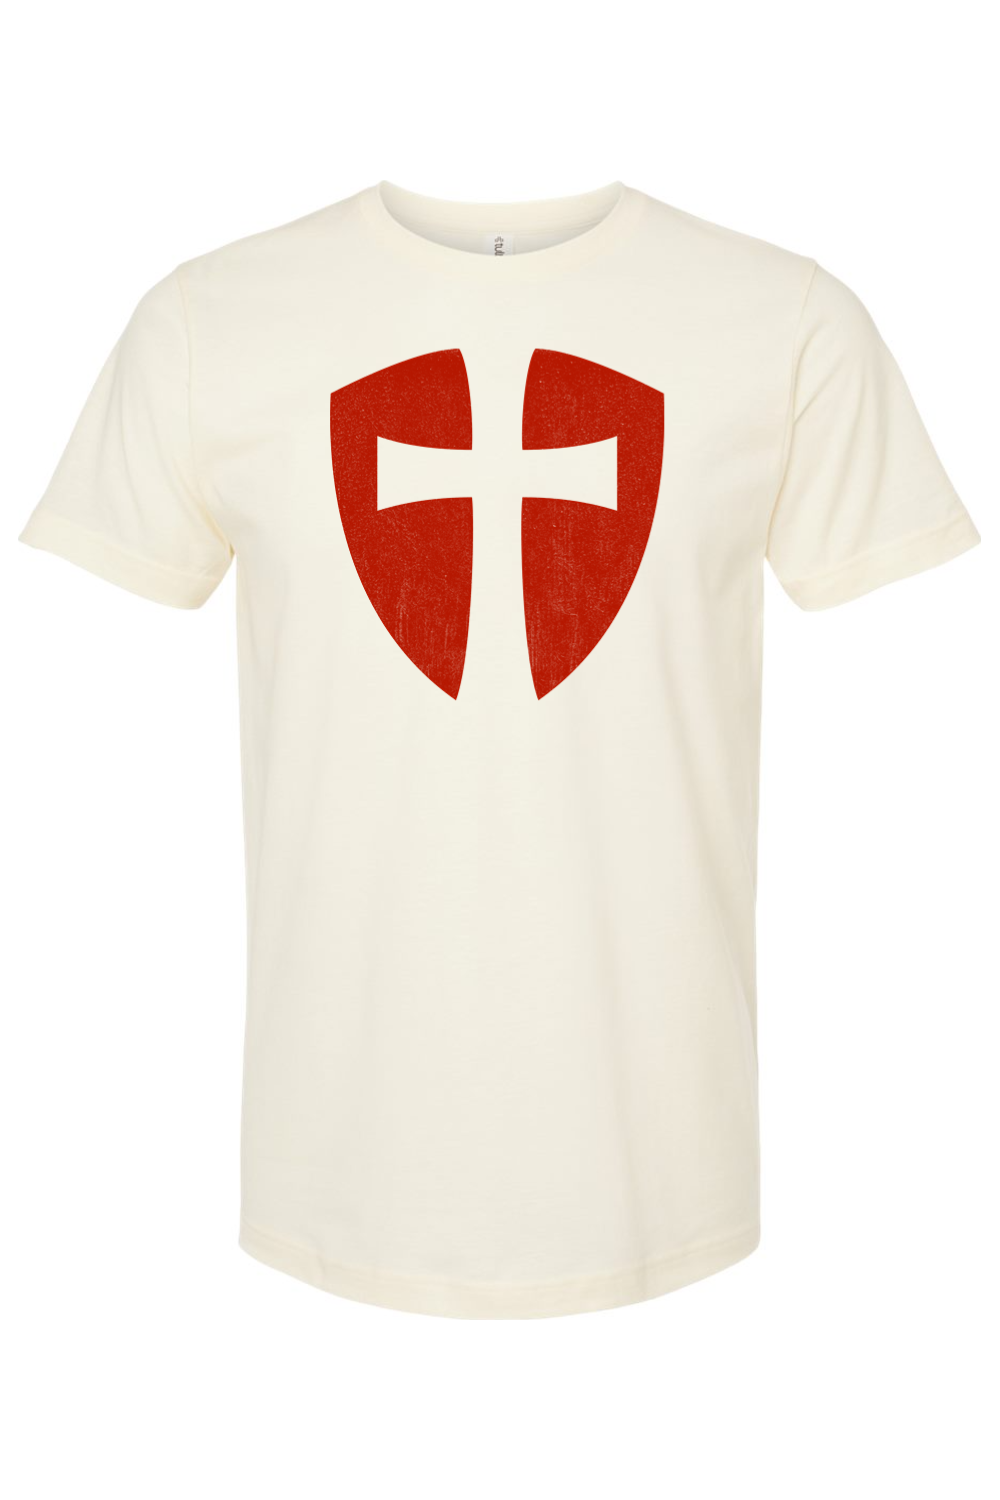 Knights Templar Cross Shield